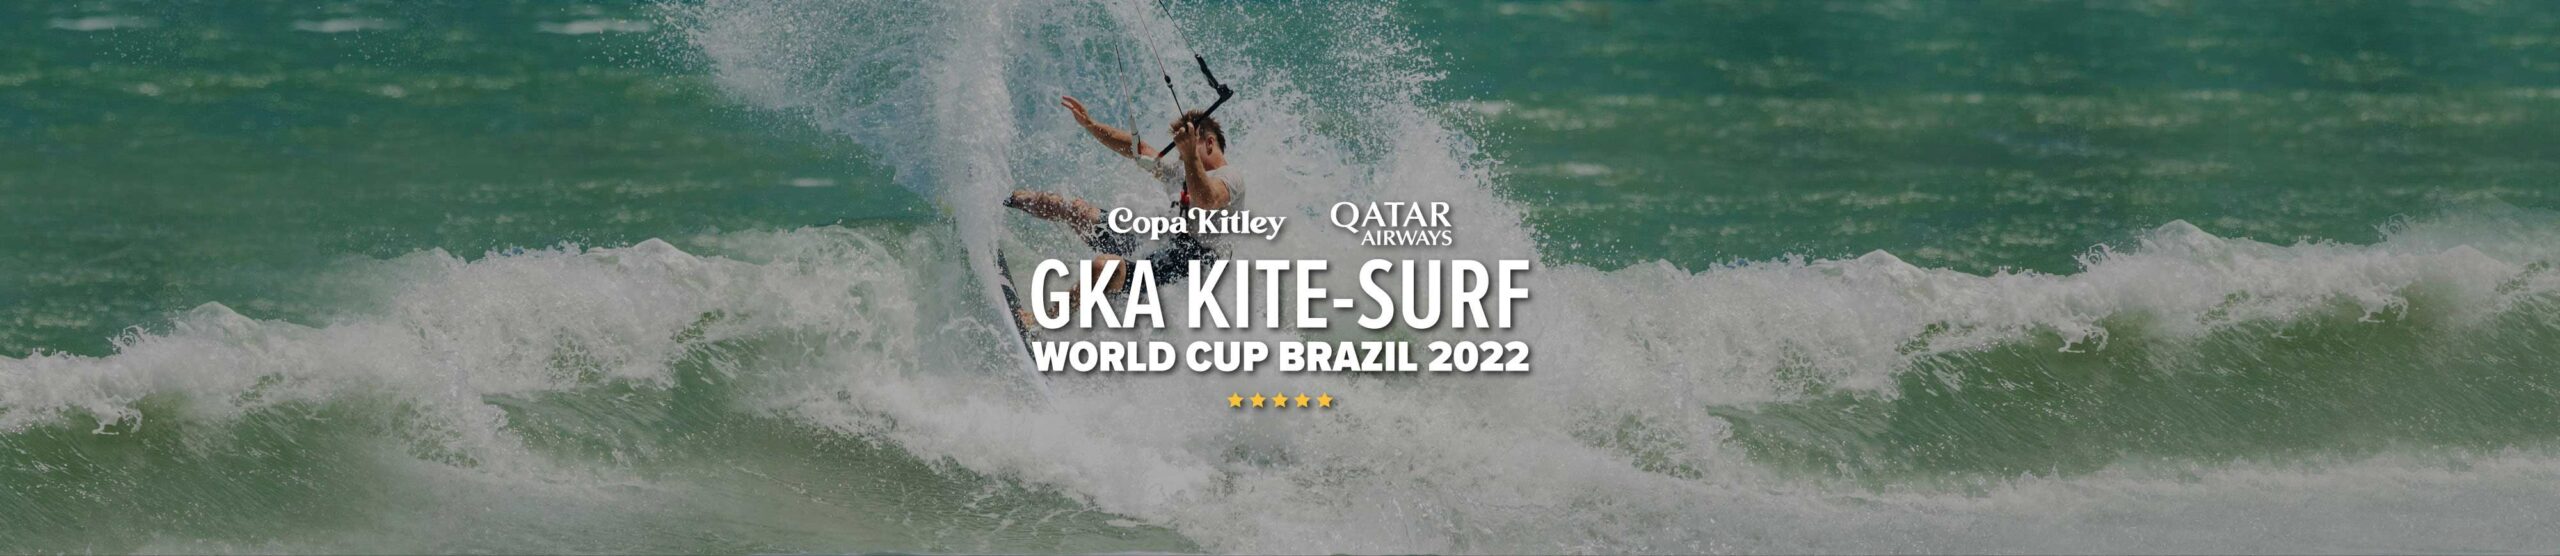 Image for Copa Kitley GKA Kite-Surf World Cup Taiba 2022